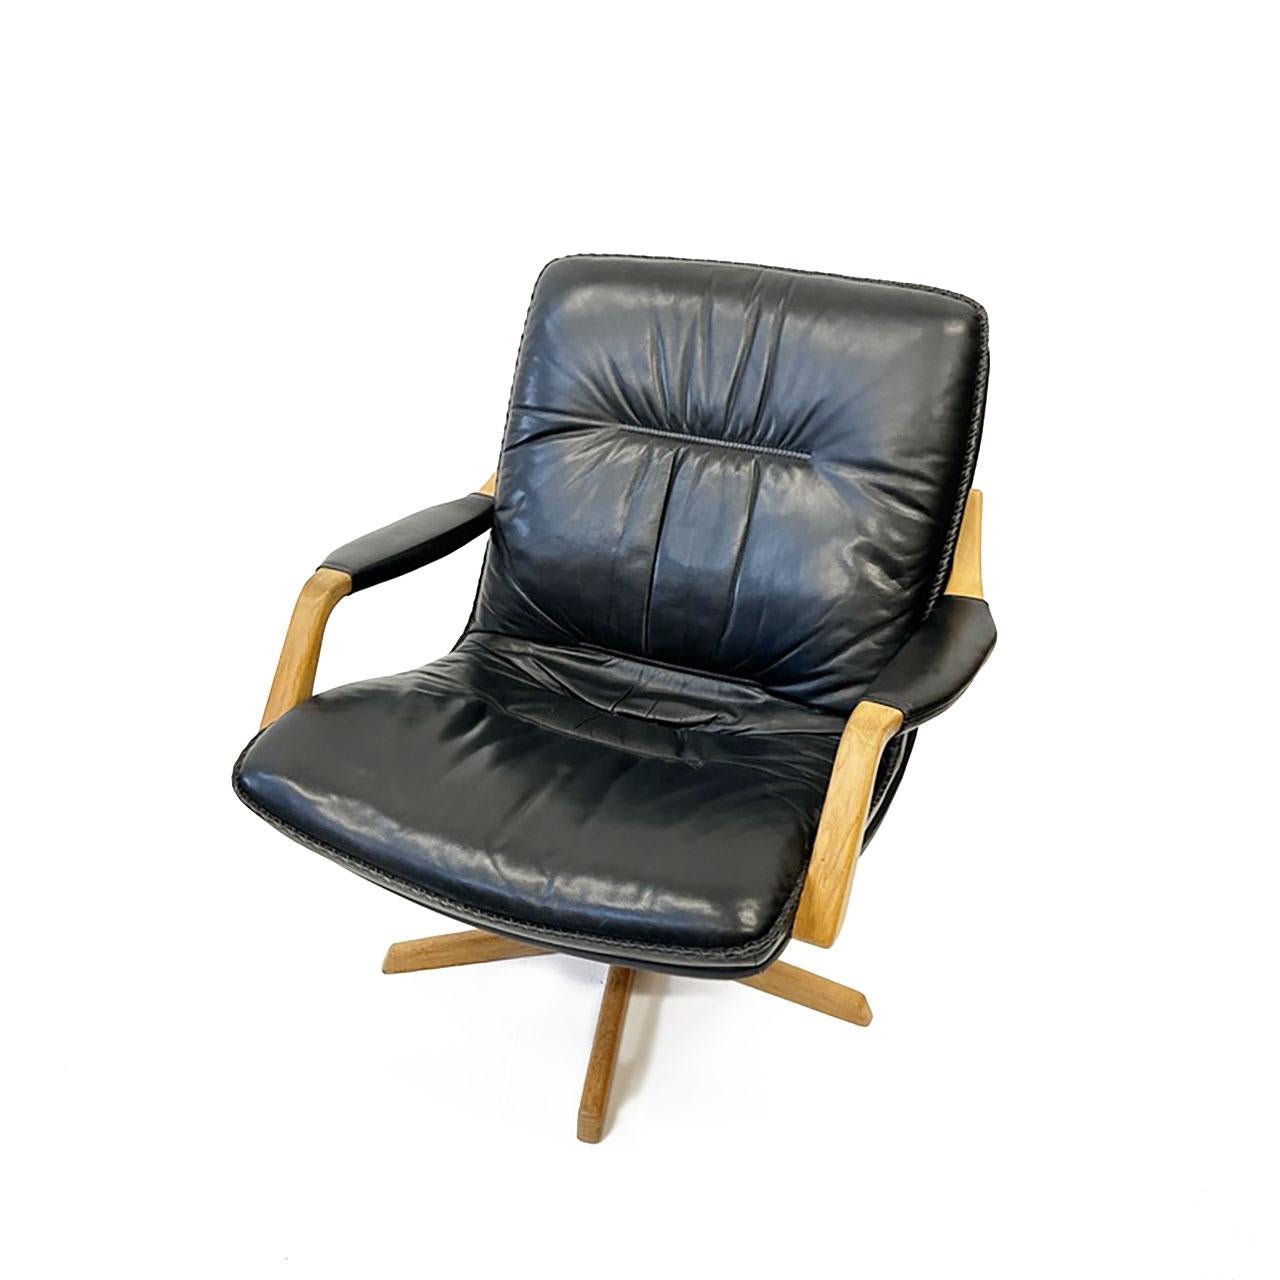 Wurde in den 1970er Jahren von Berg Furniture in Dänemark hergestellt. Gepolstert mit schwarzem Leder mit Peitschenstichbesatz und natürlicher, schöner Patina. Das Gestell und die Armlehnen sind aus Eichenholz gefertigt. Qualität, Design und Komfort